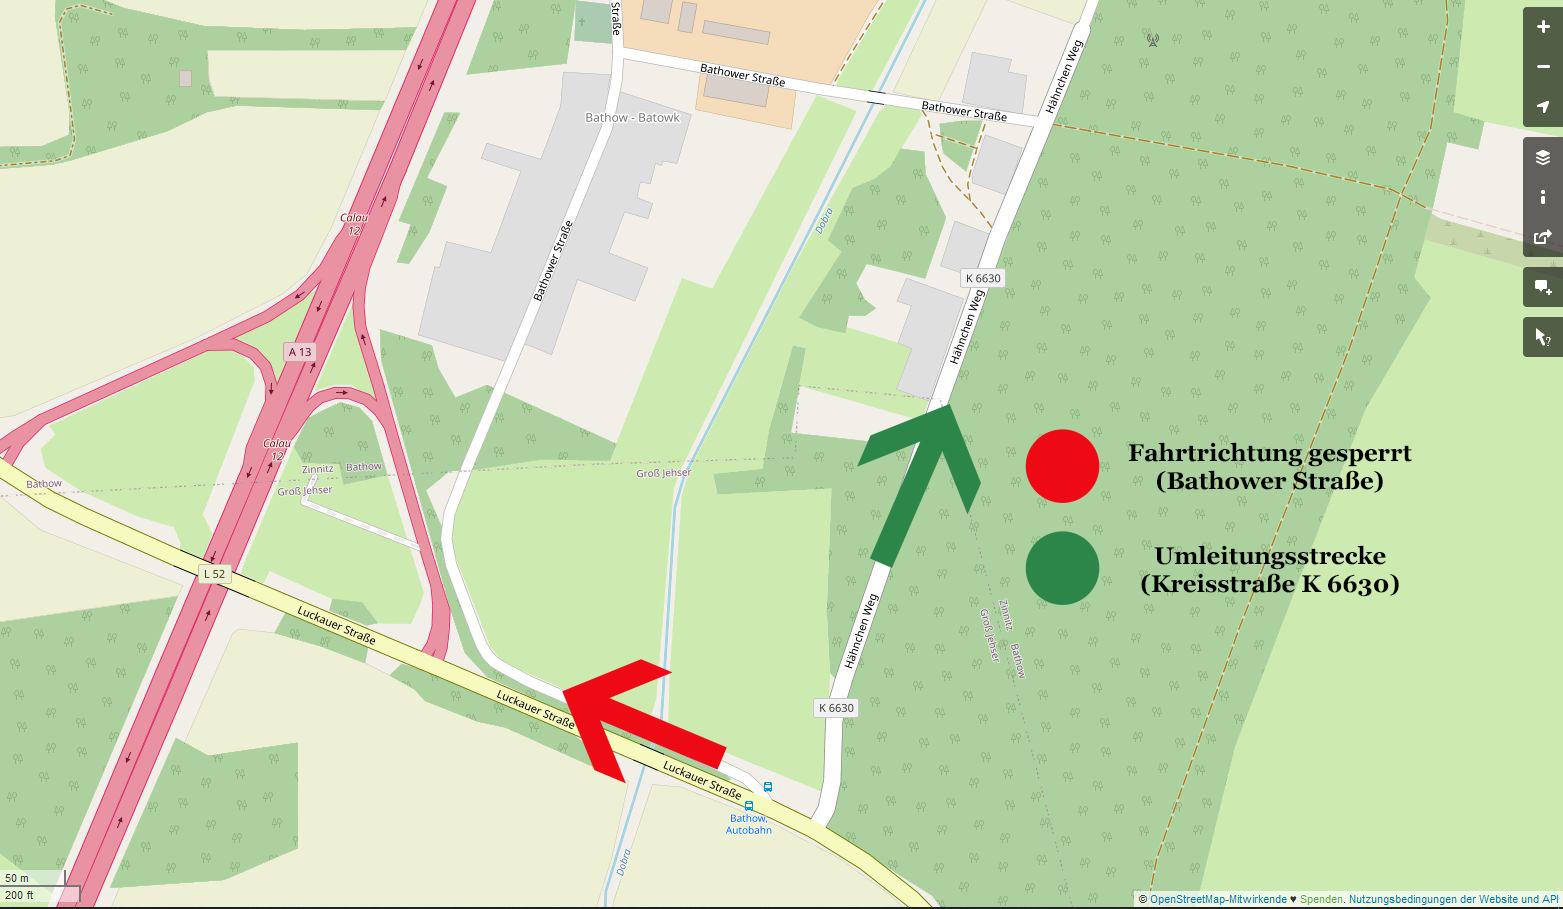 Schematische  Darstellung der Sperrung sowie alternativen Zufahrt von Bathow. Grafik: OpenStreetMap